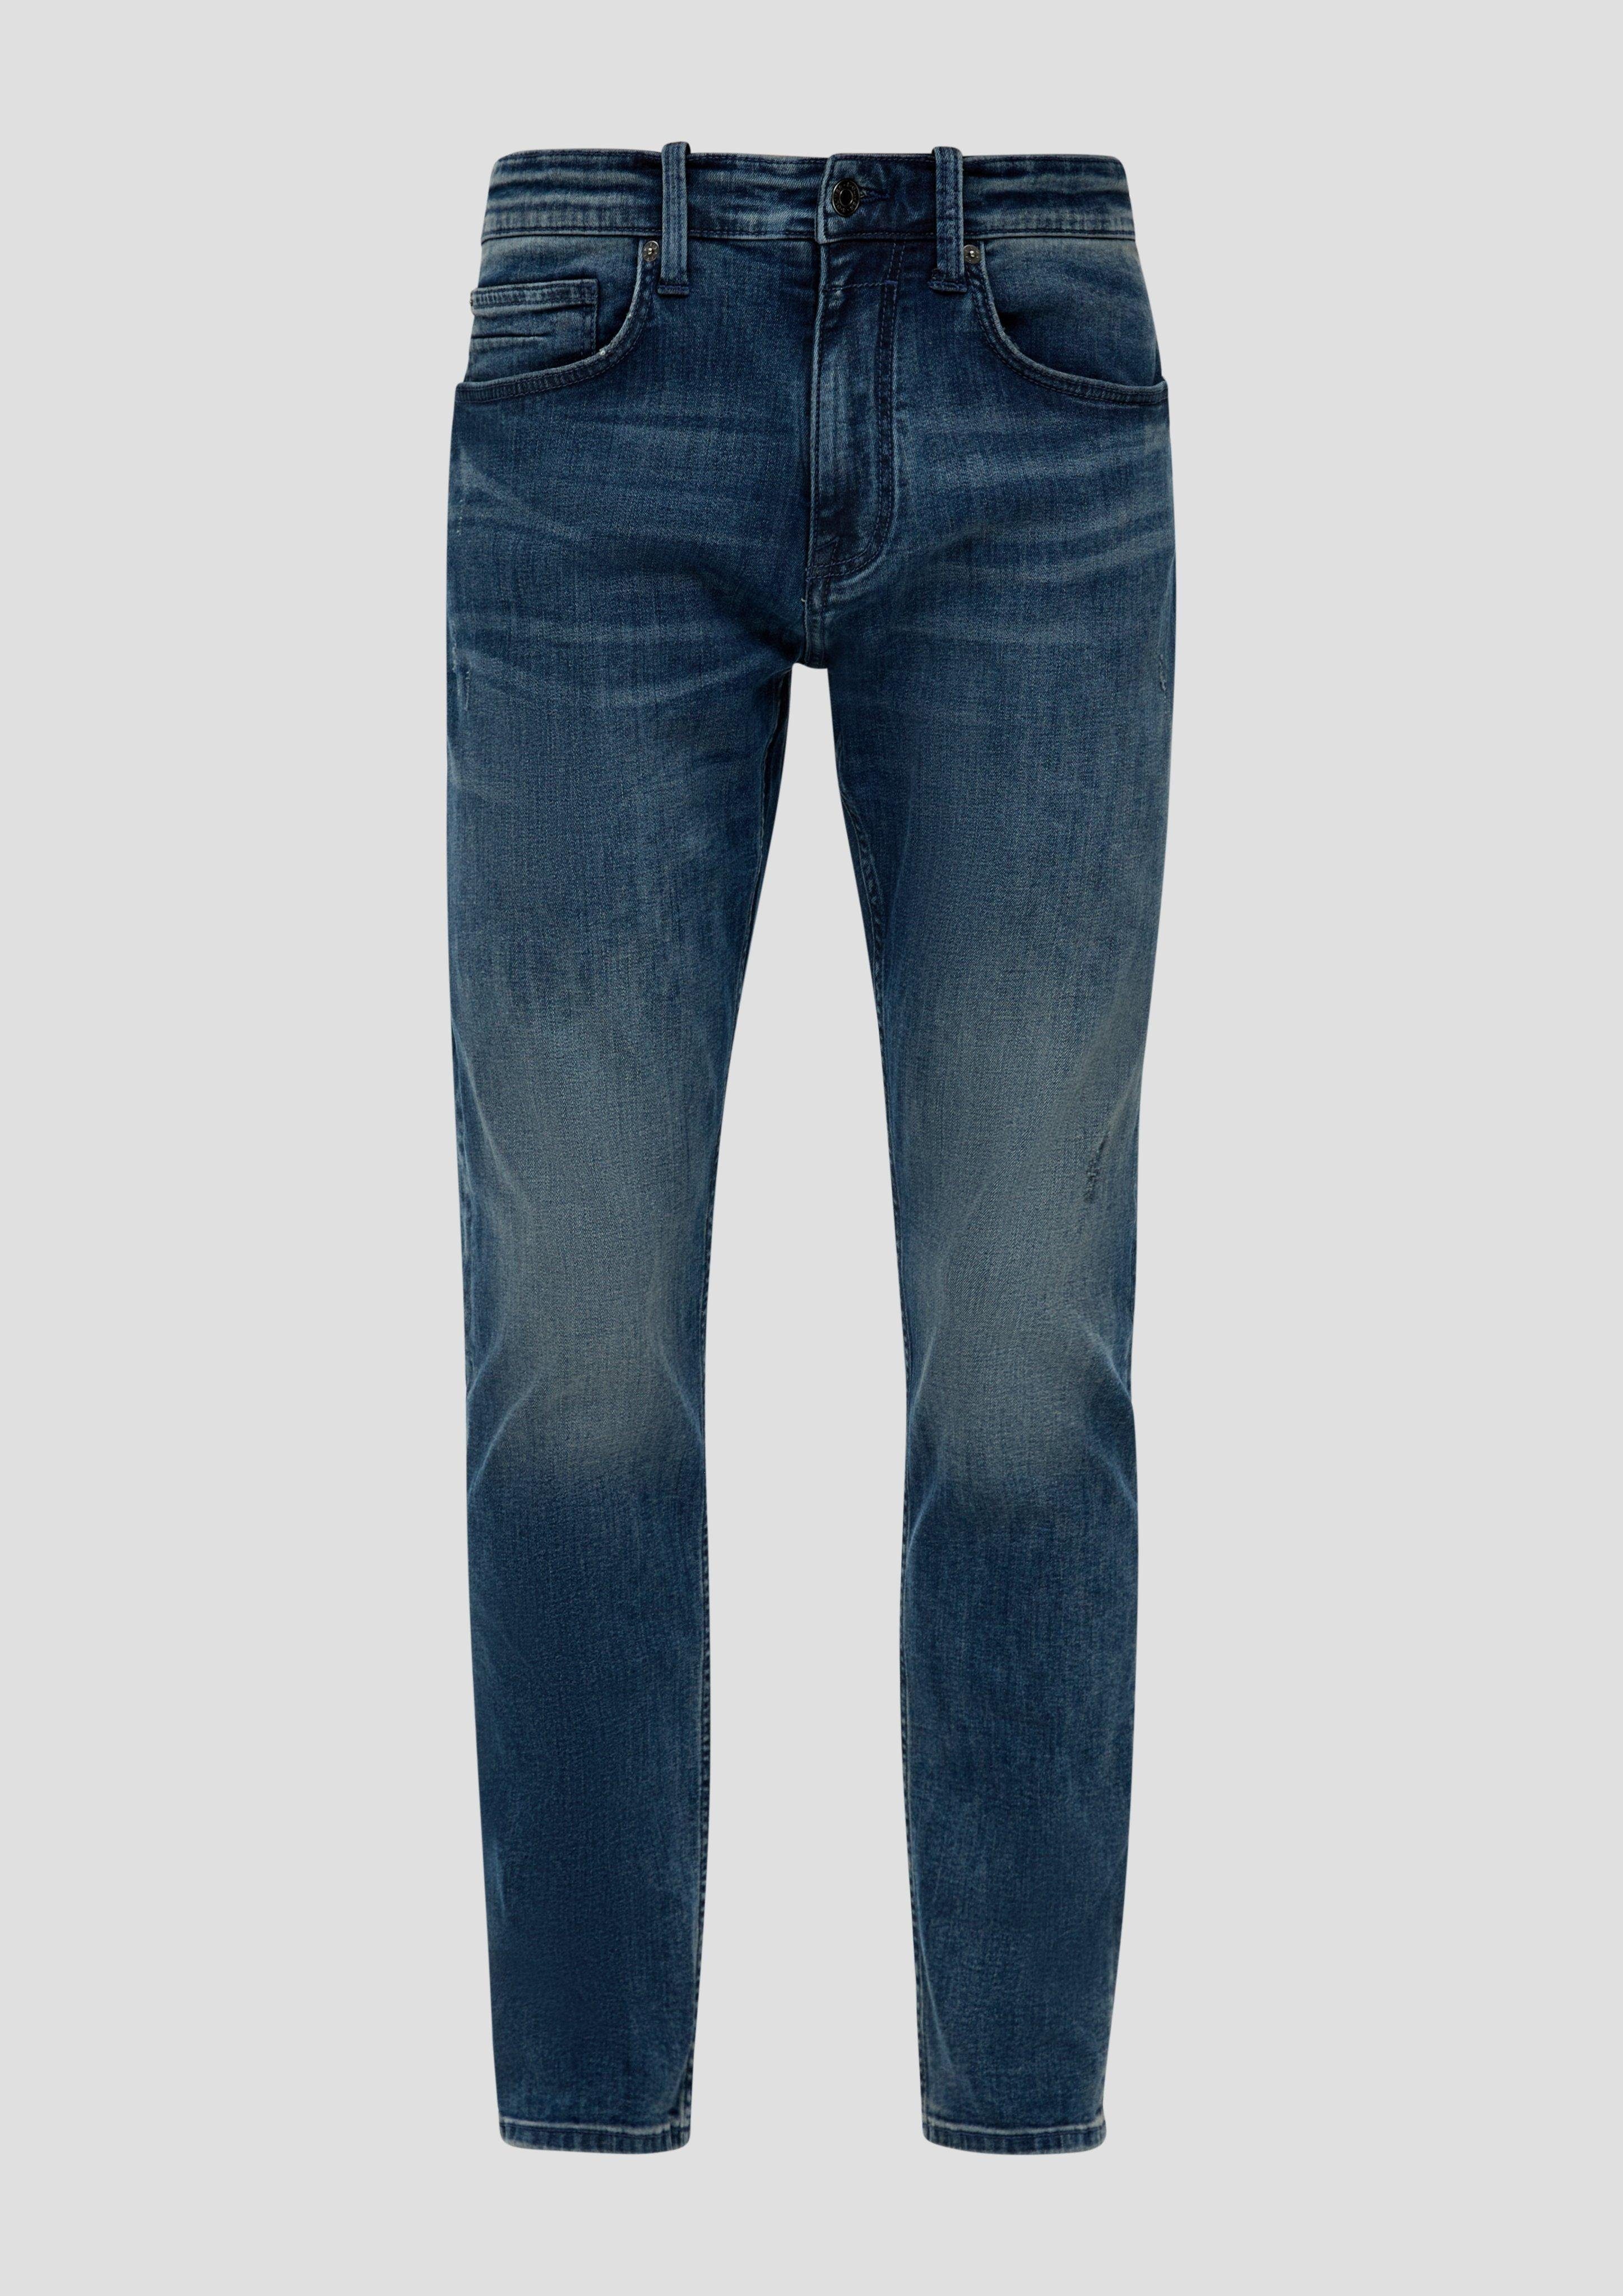 s.Oliver Stoffhose Jeans Leg Leder-Patch, / Tapered Rise Mid 5-Pocket-Stil / Regular / Fit / Waschung dunkelblau